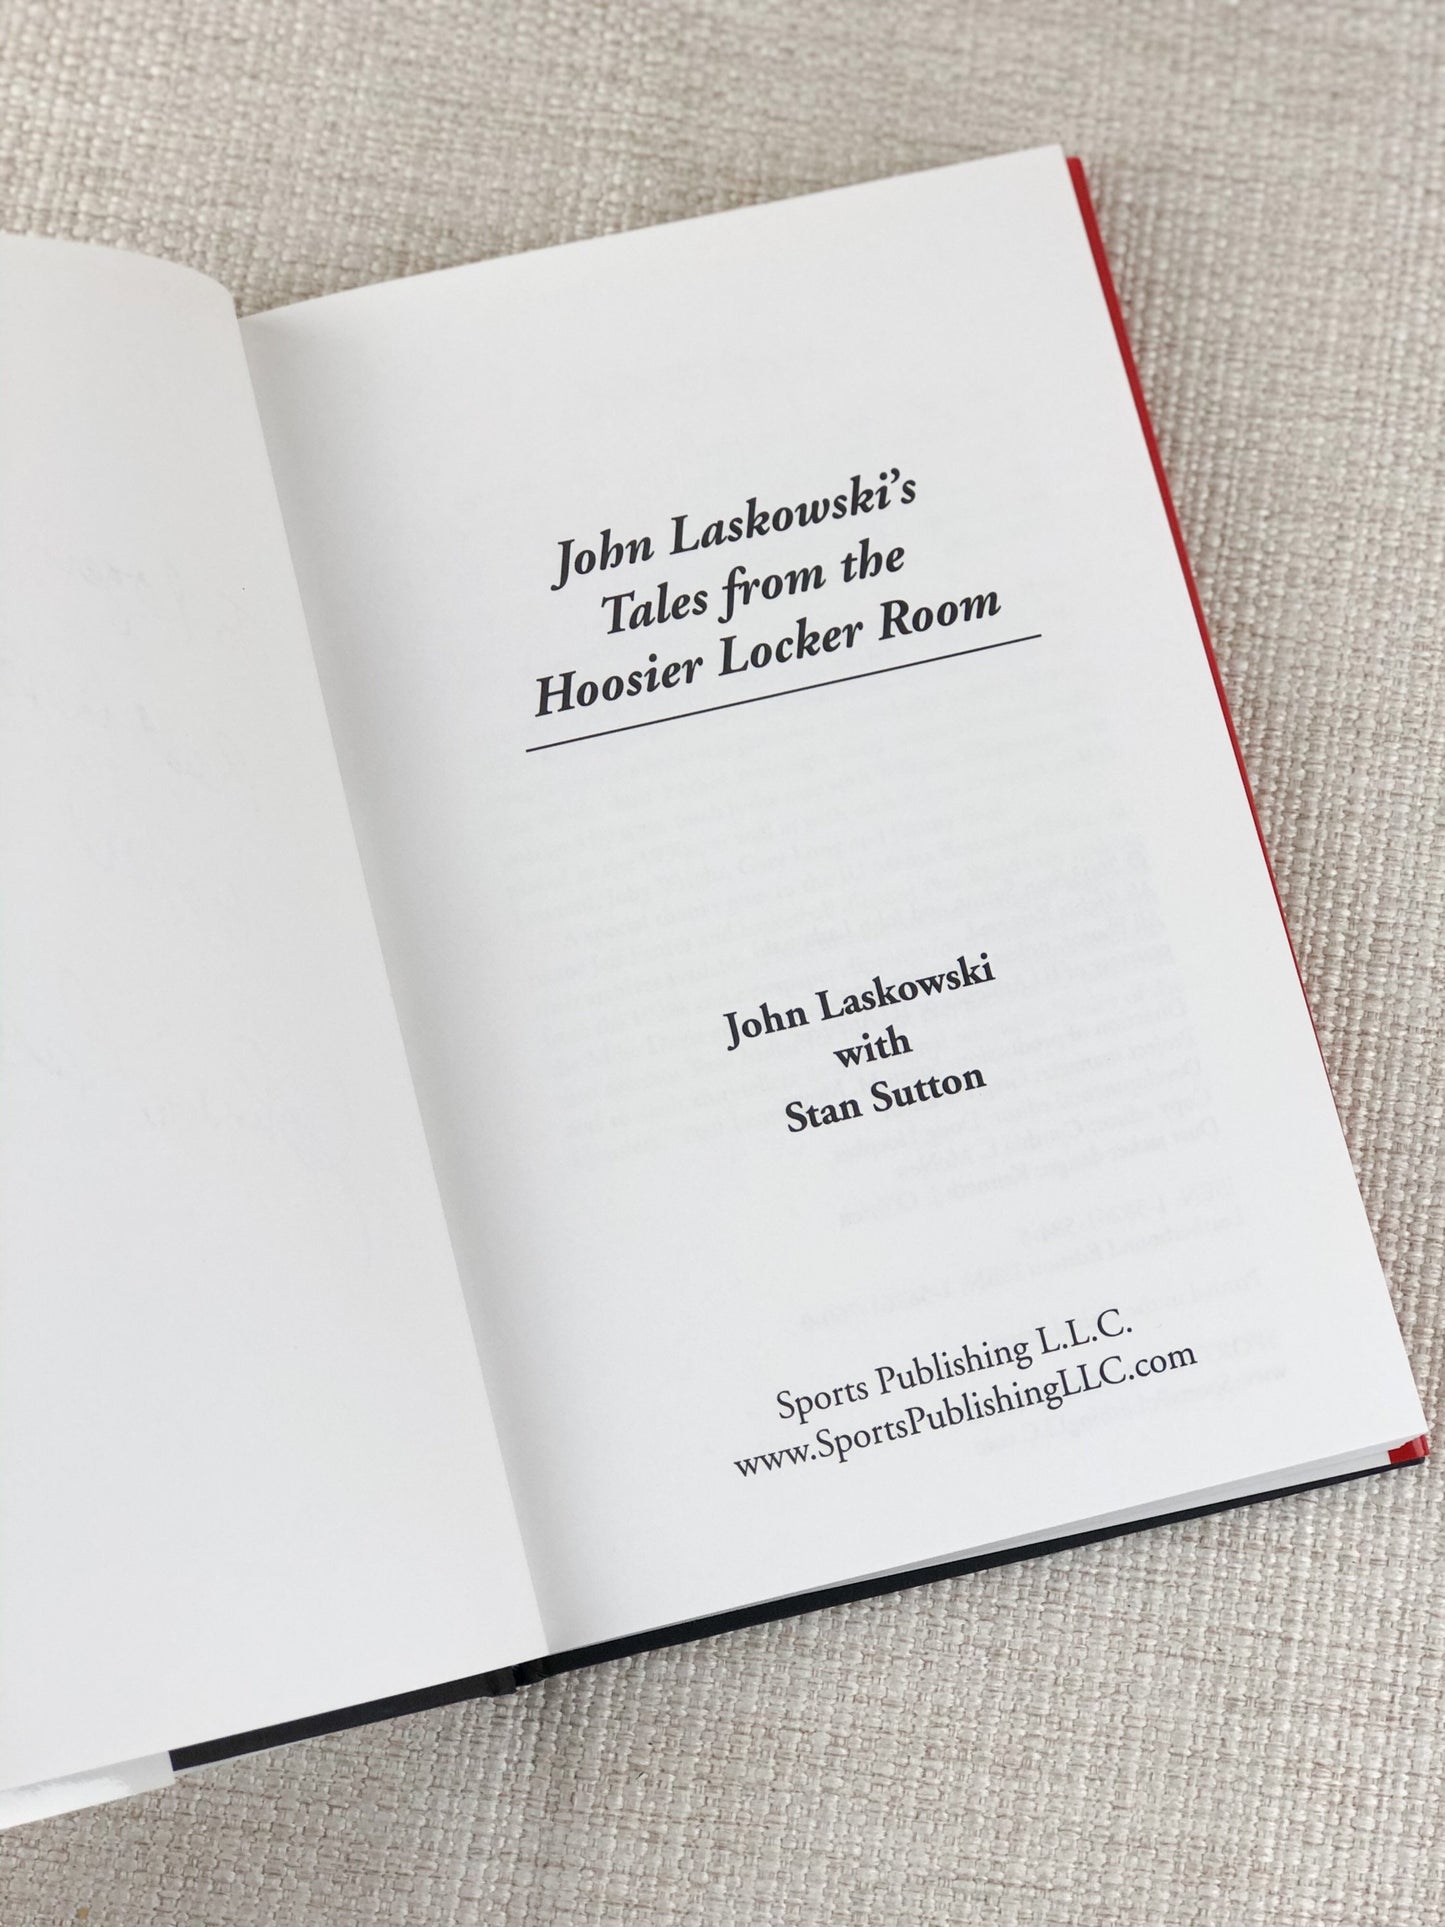 Signed Book by John Laskowski